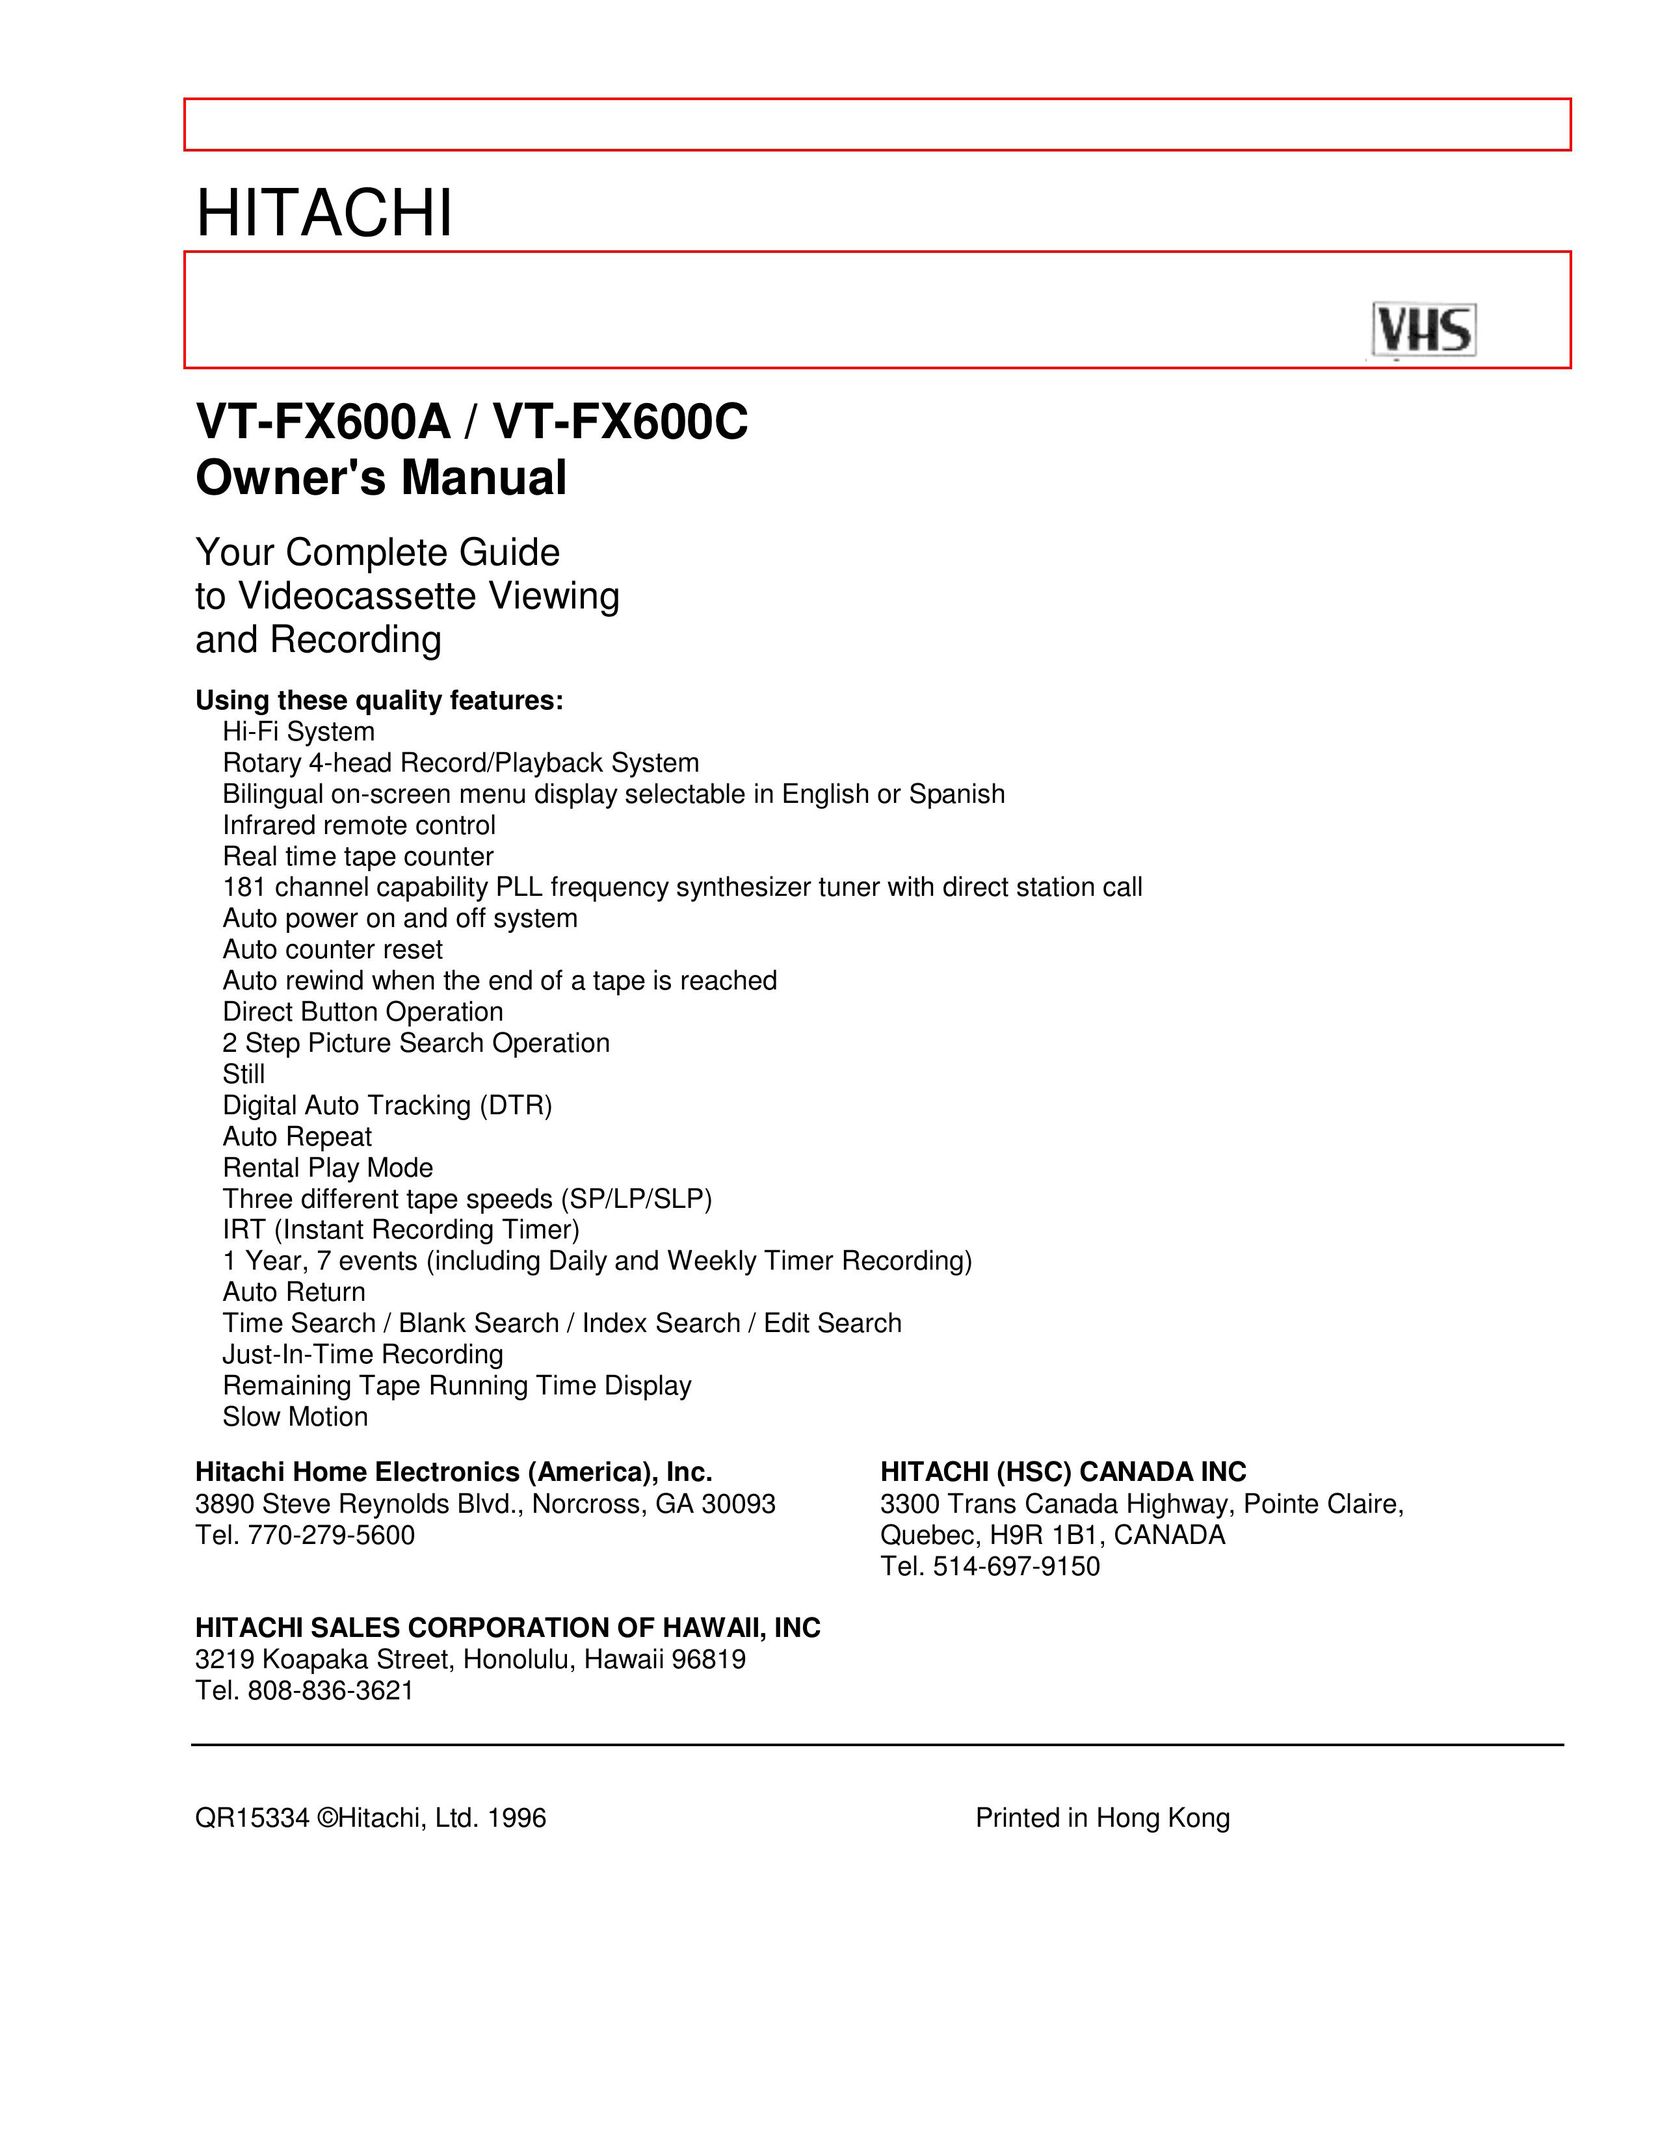 Hitachi VT-FX600C VCR User Manual